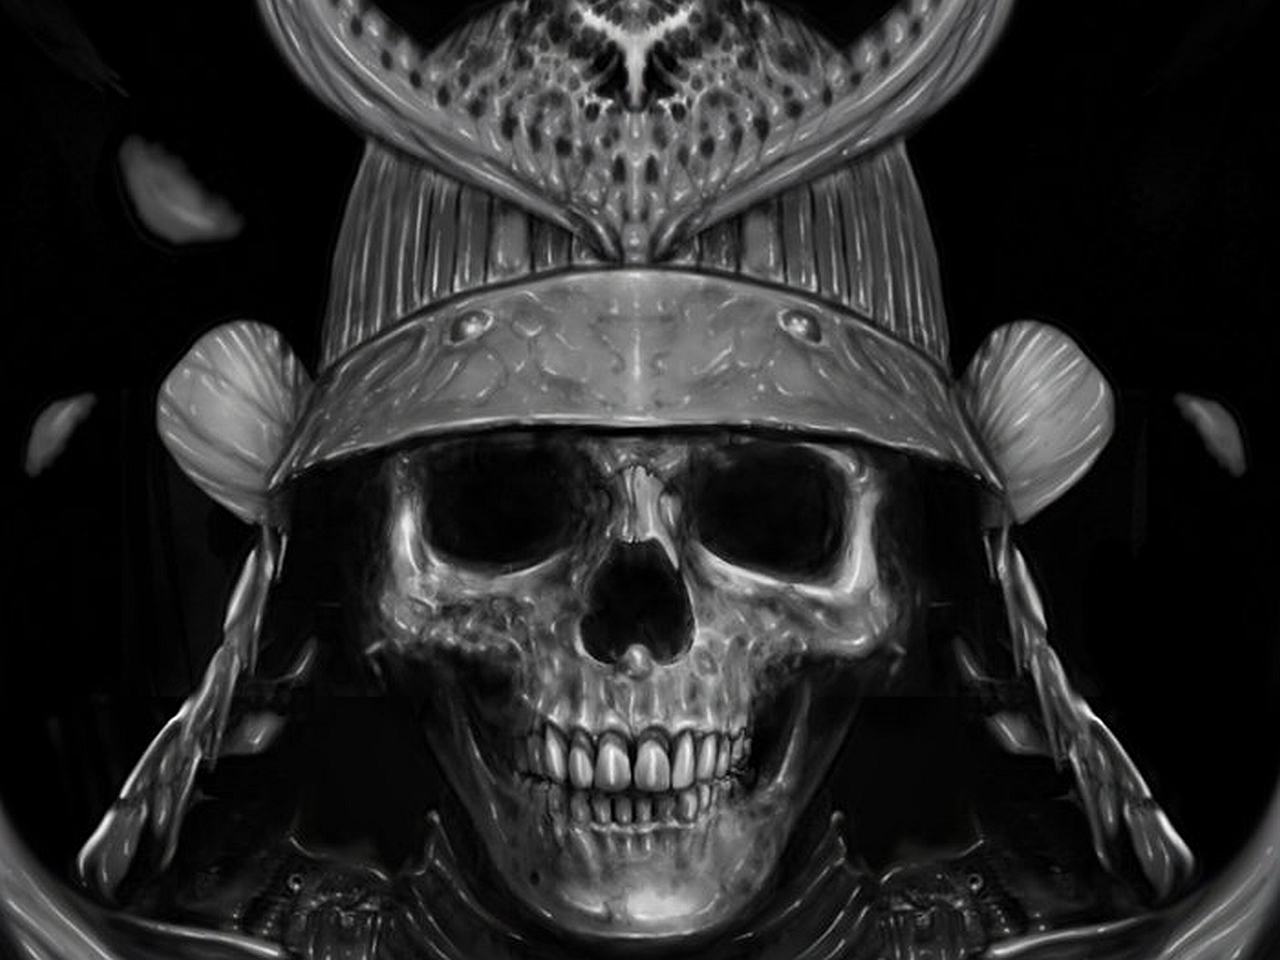 fond d'écran totenkopf,crâne,os,photographie de nature morte,photographie monochrome,noir et blanc